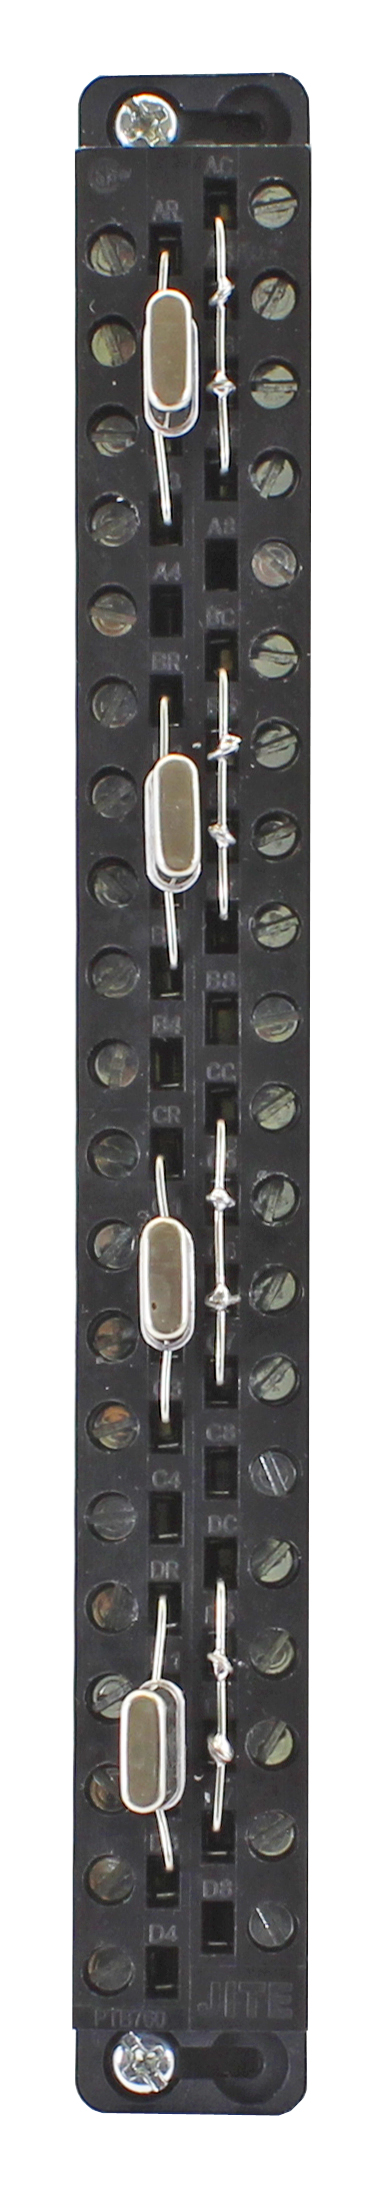 2559-FCAL Precision Calibration Connector